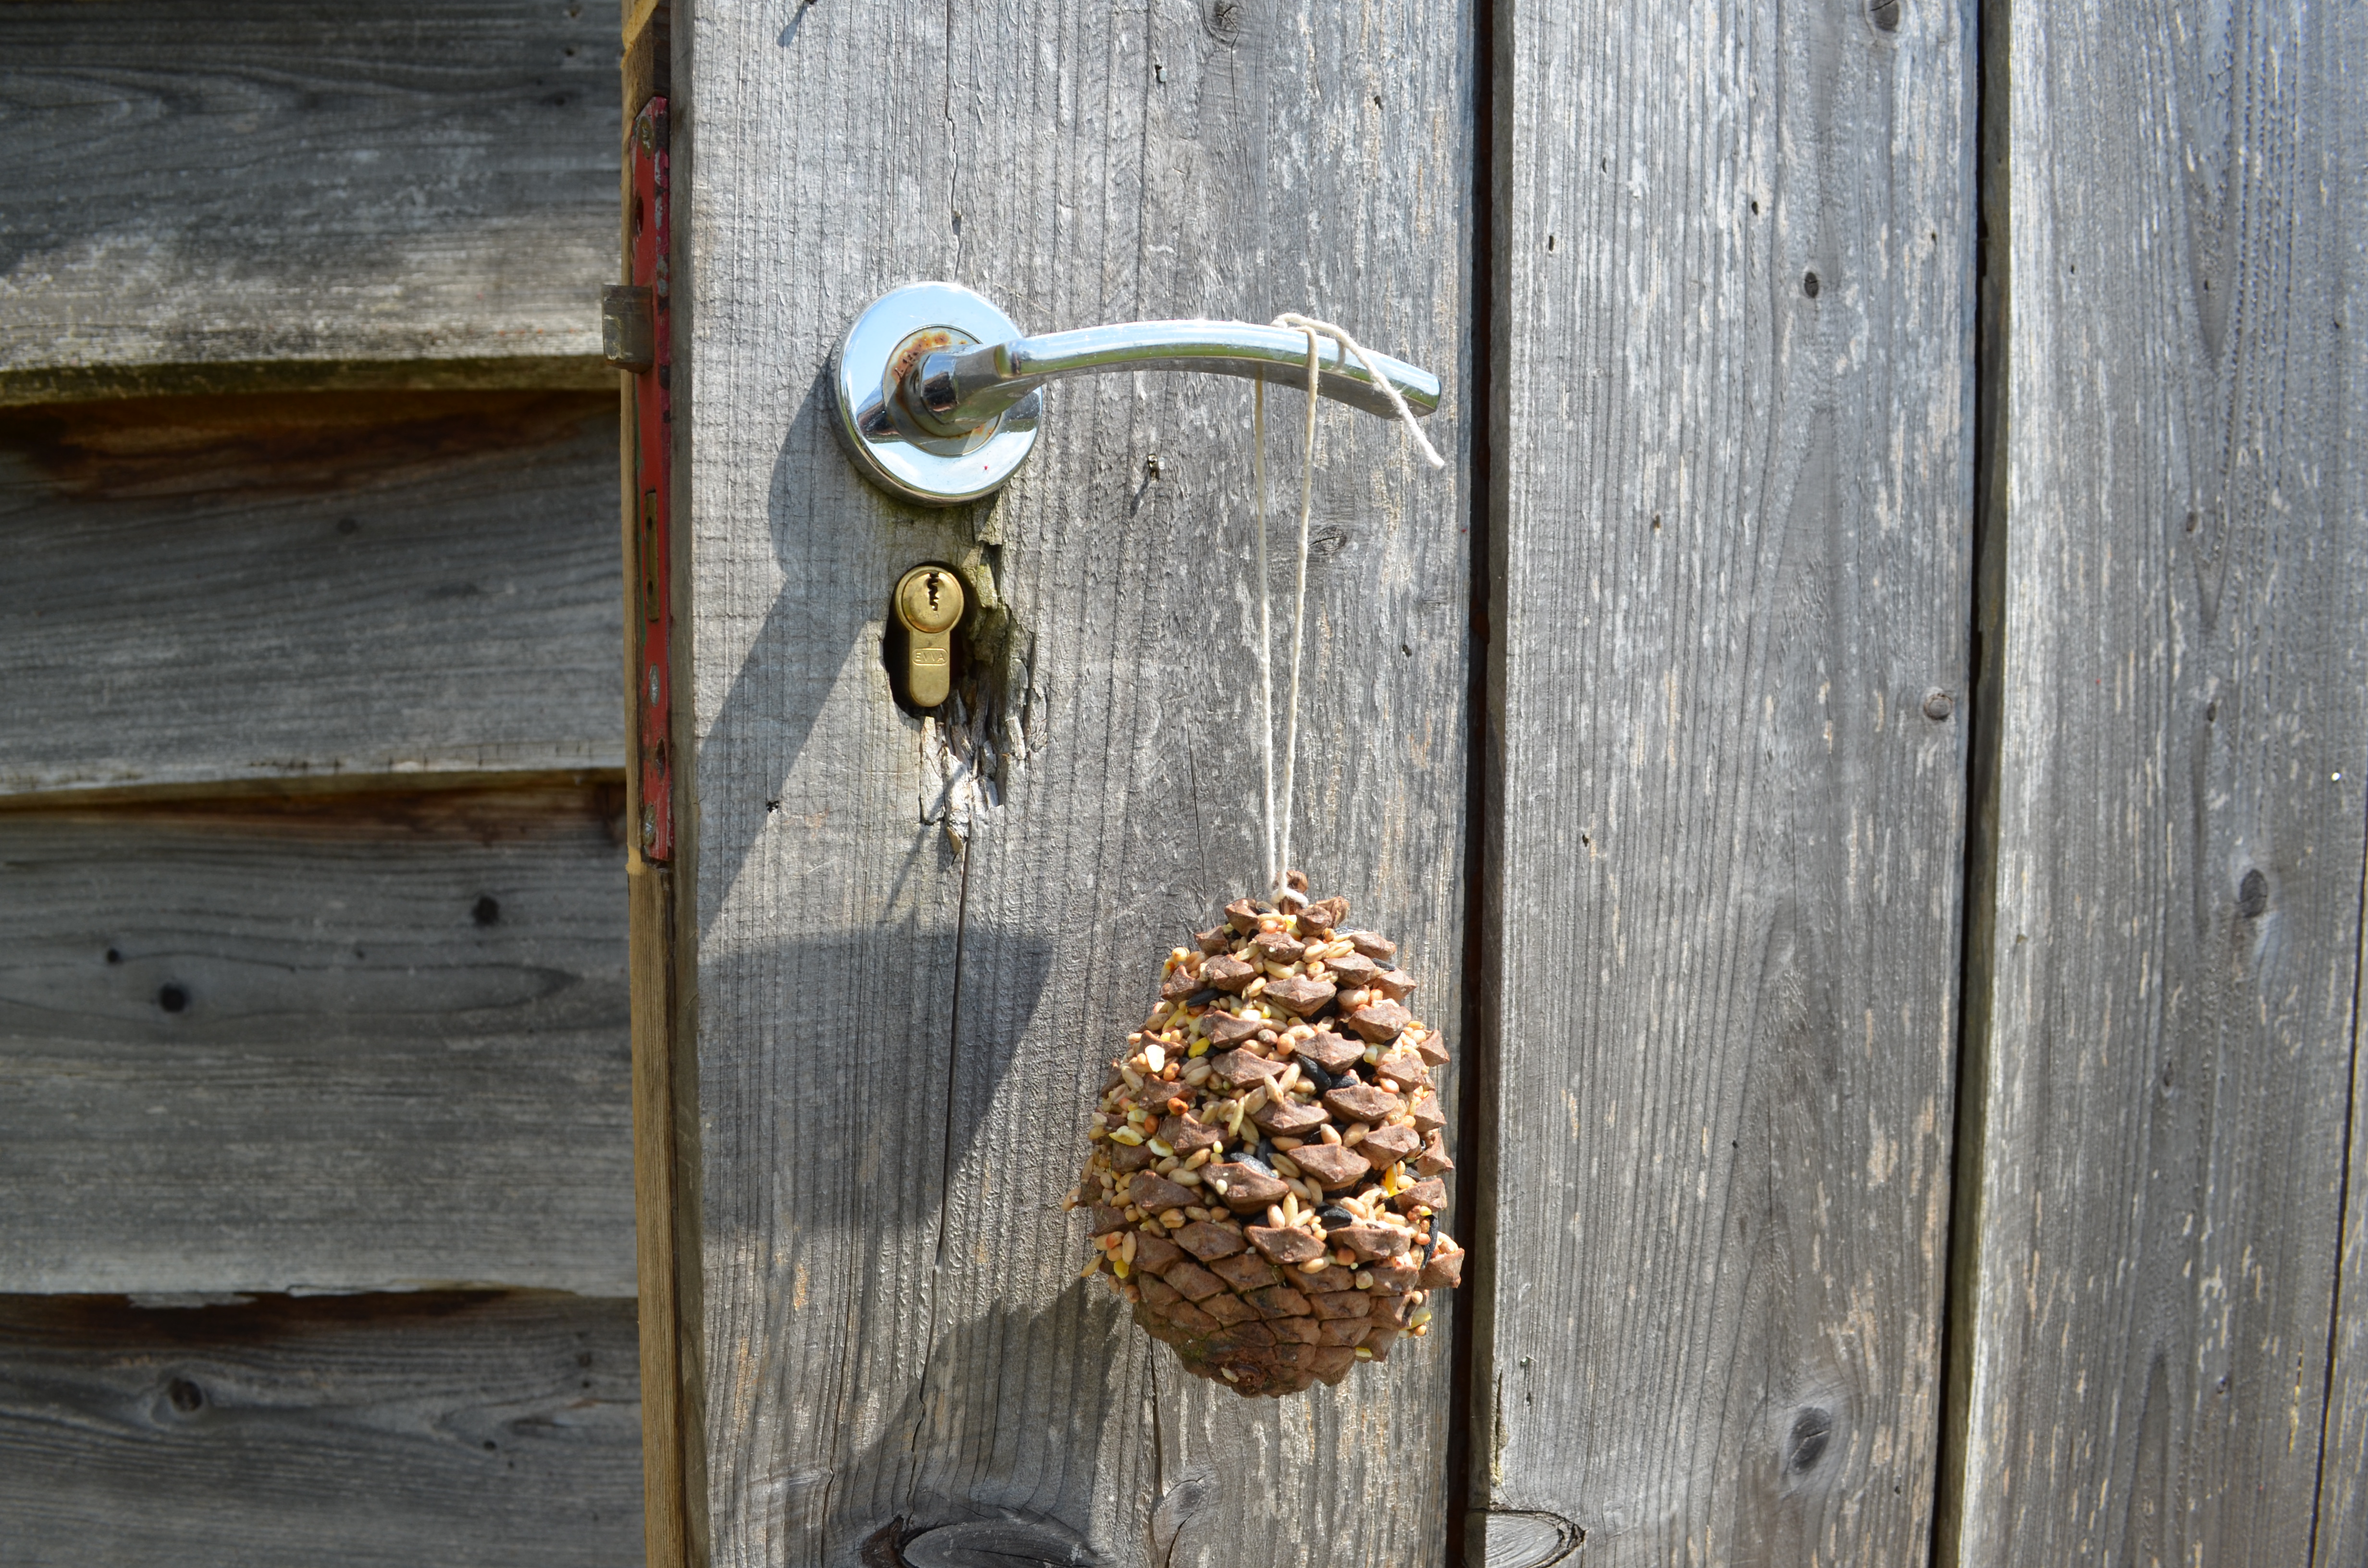 Pine cone bird feeder hanging on a door handle